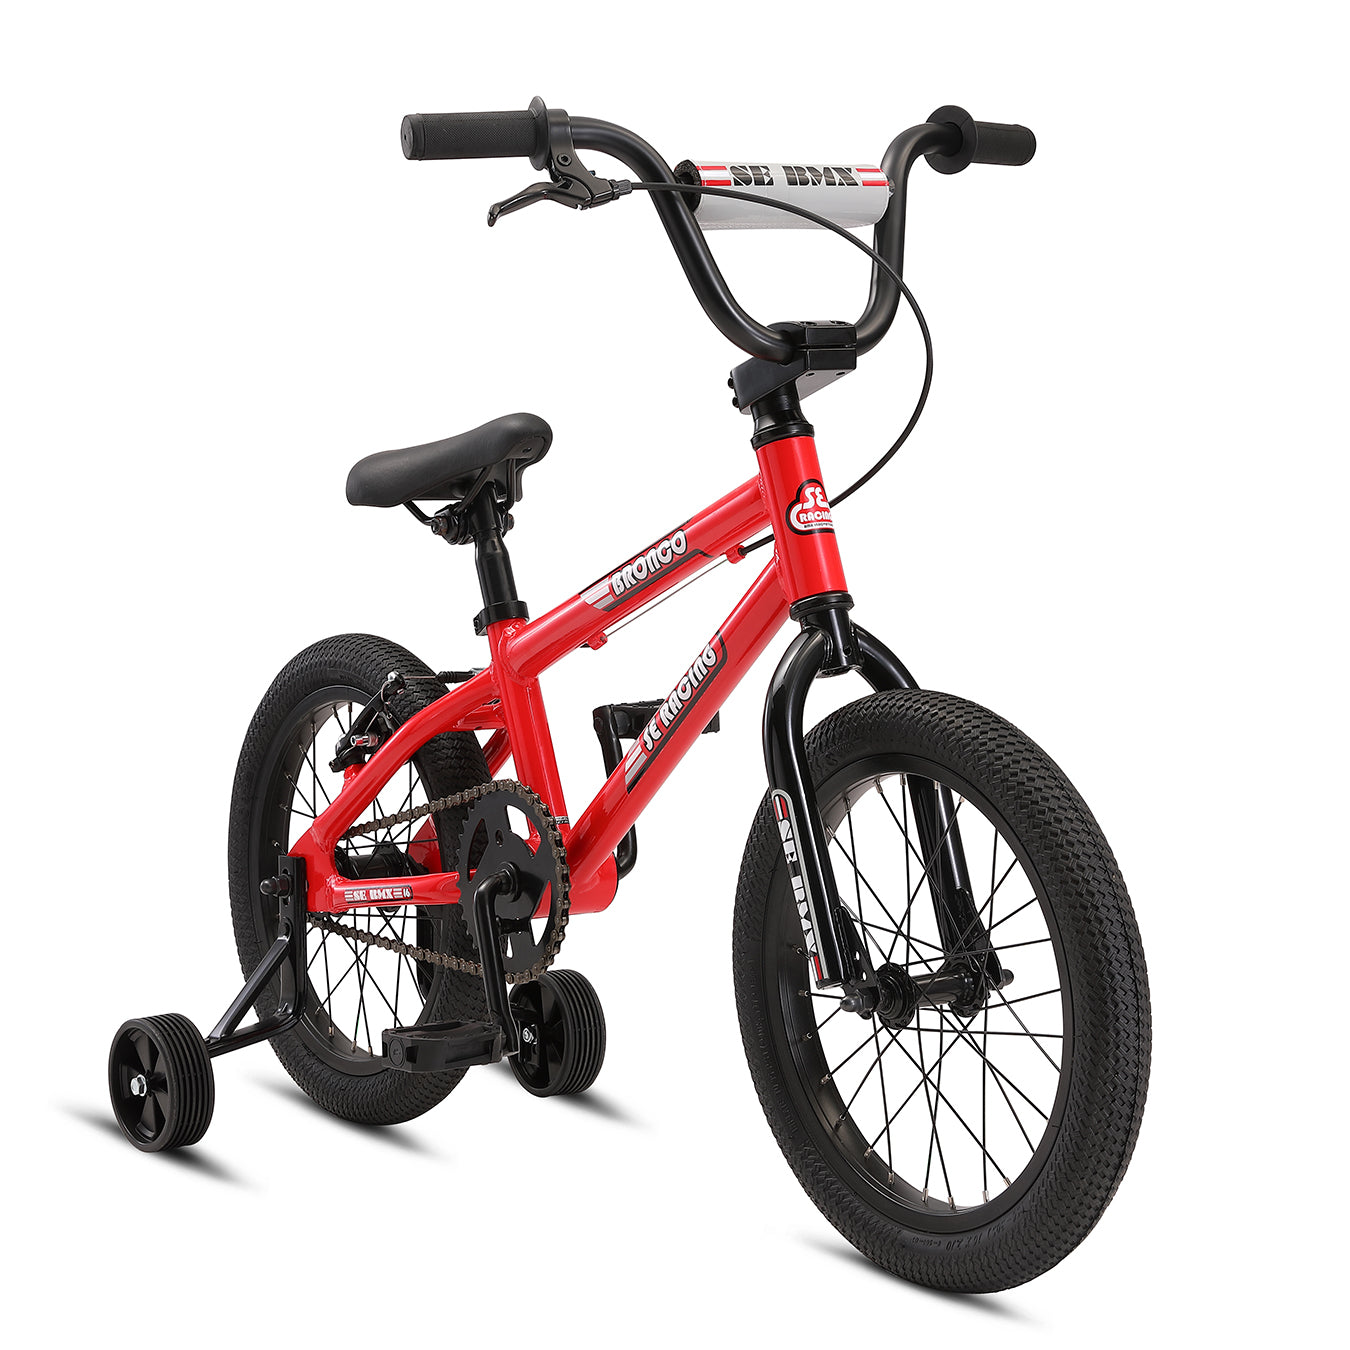 SE Bikes Bronco 16" Kids Bike - Cycleson